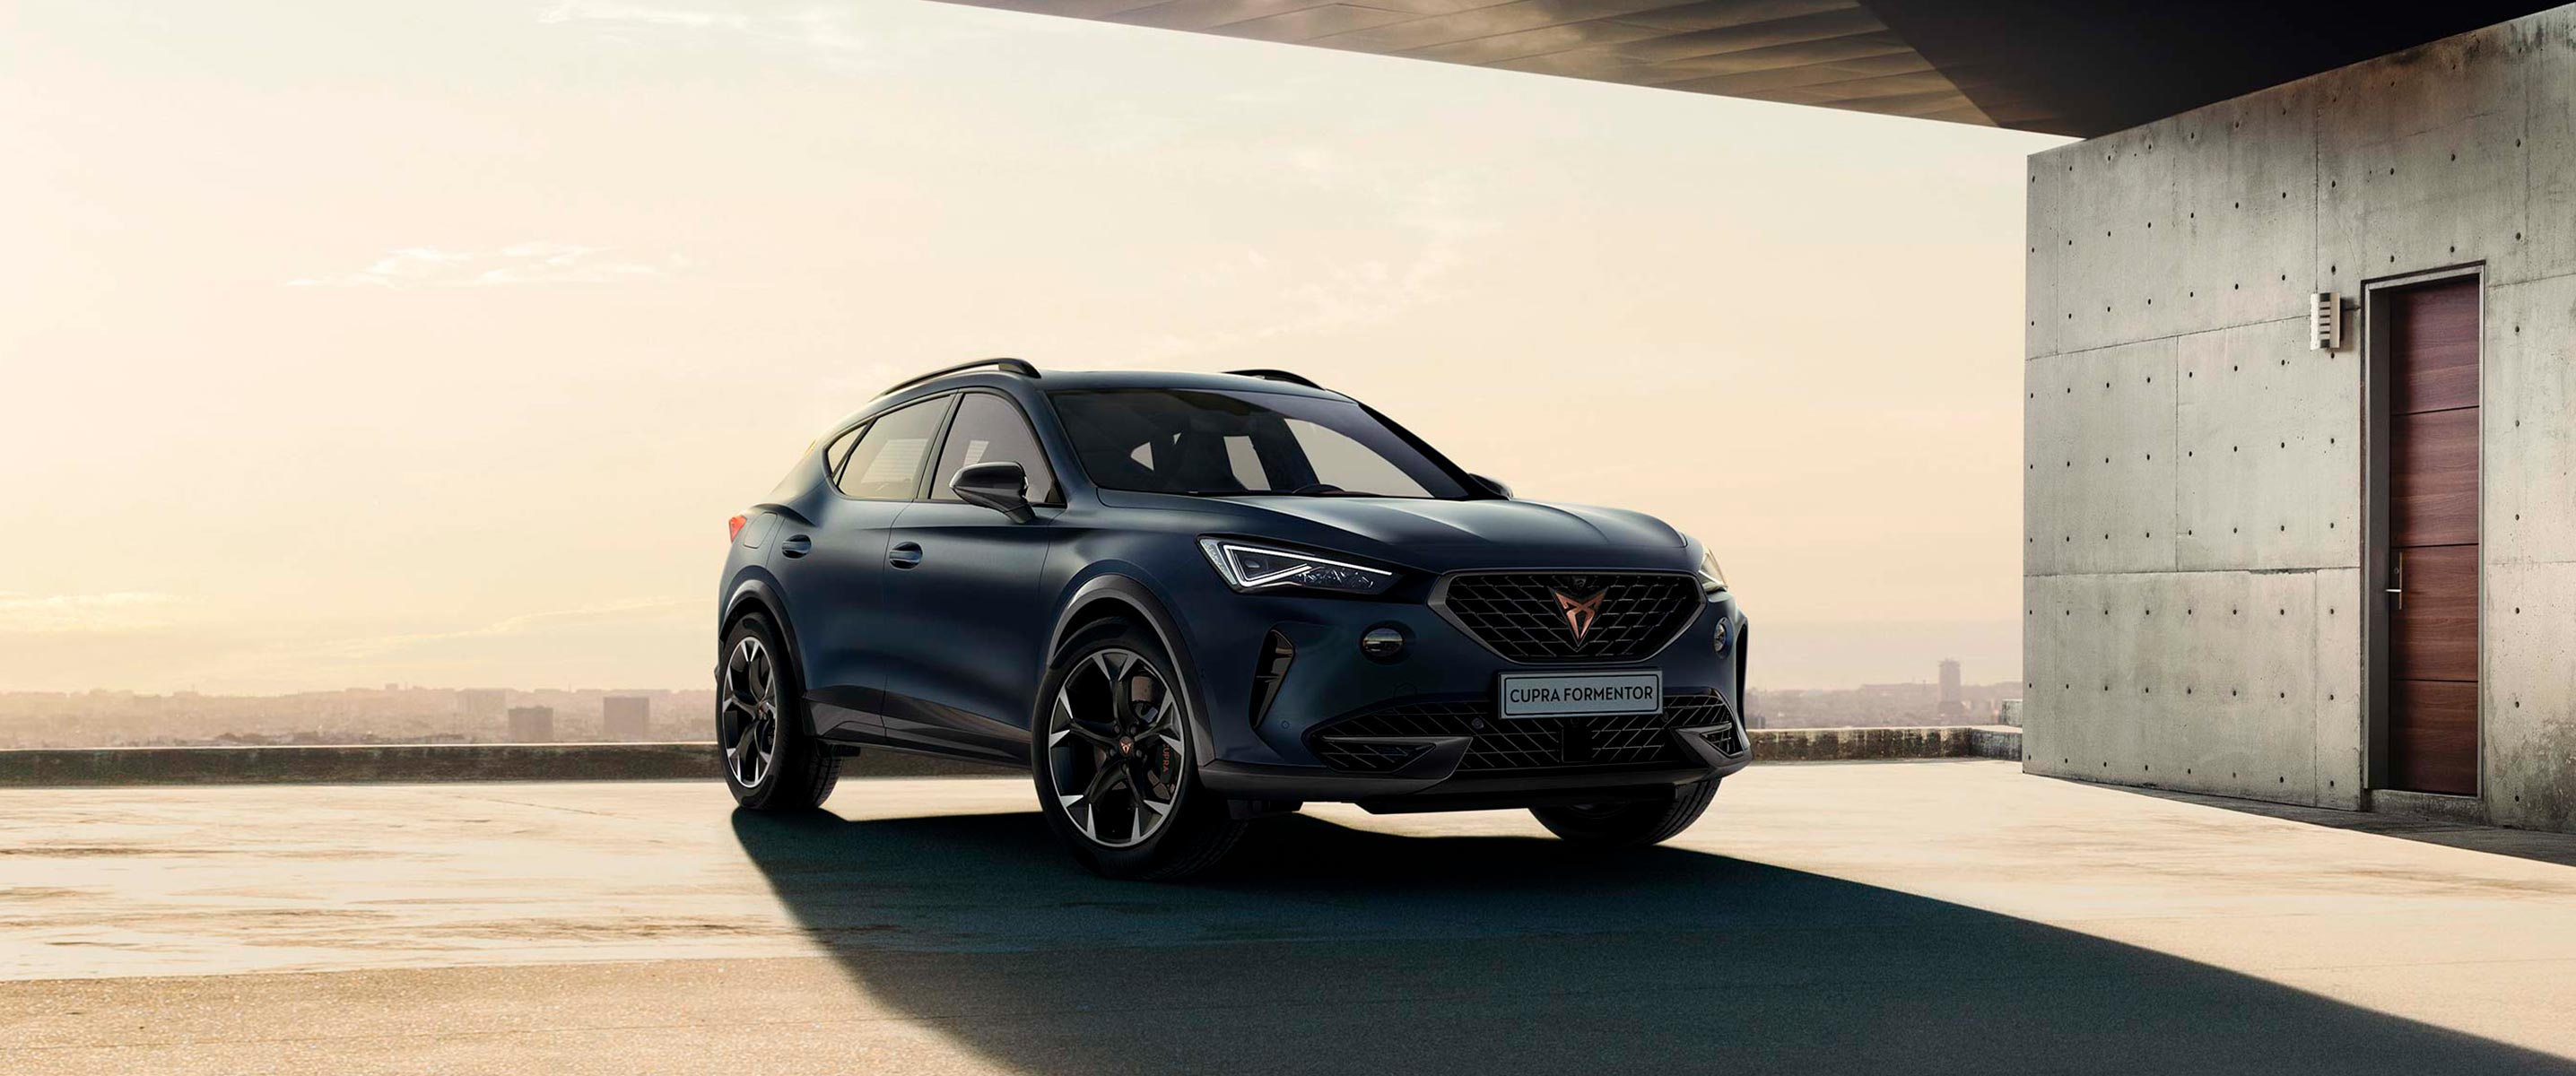 CUPRA Formentor, elegido como uno de los siete finalistas del prestigioso premio ‘Car of the Year 2021’